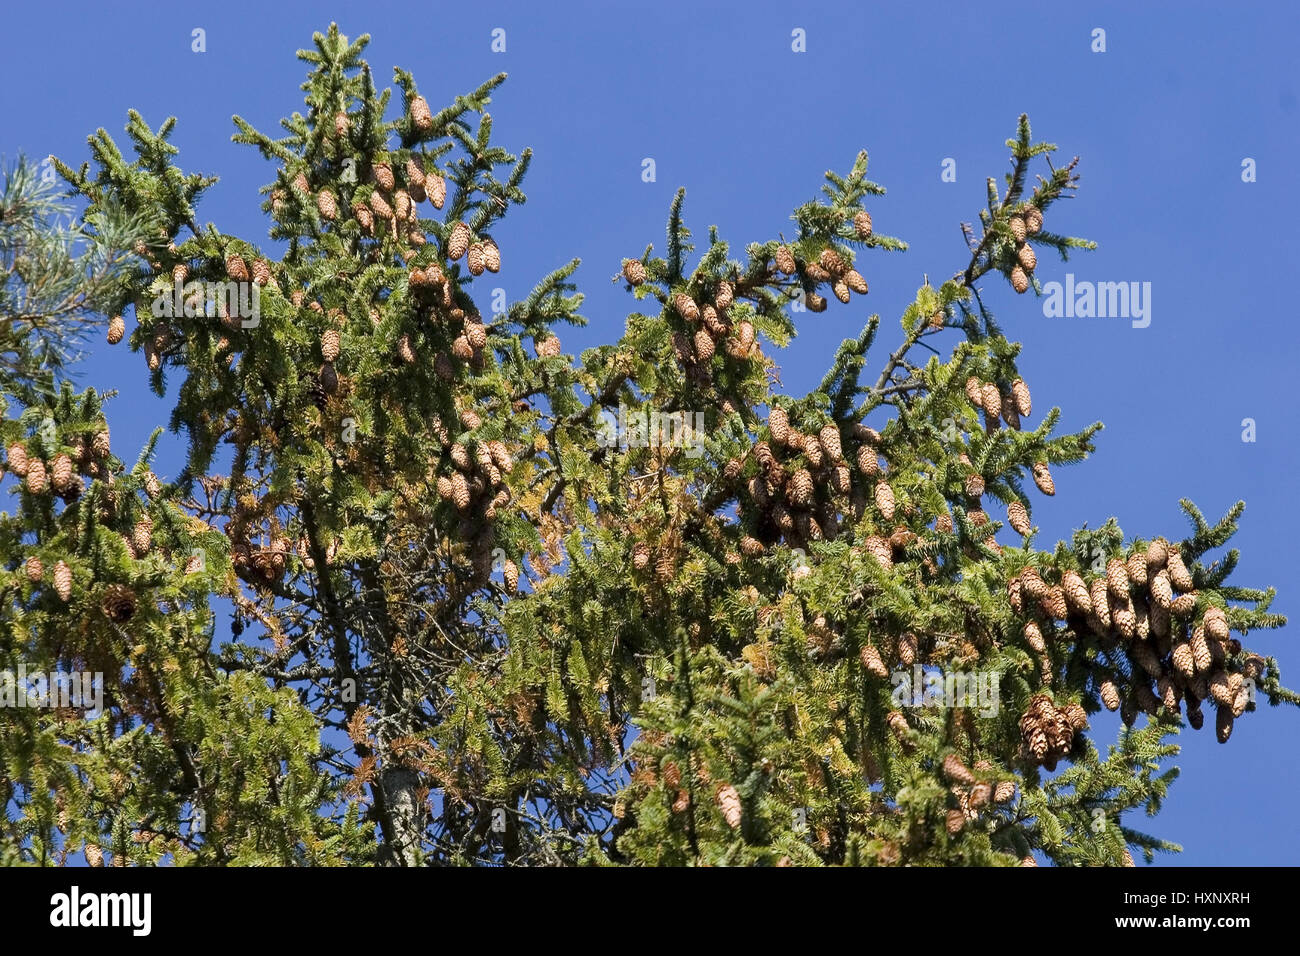 Fir cones hang on spruce. Masuria Poland, Fichtenzapfen hängen auf Fichte.Masuren Polen Stock Photo